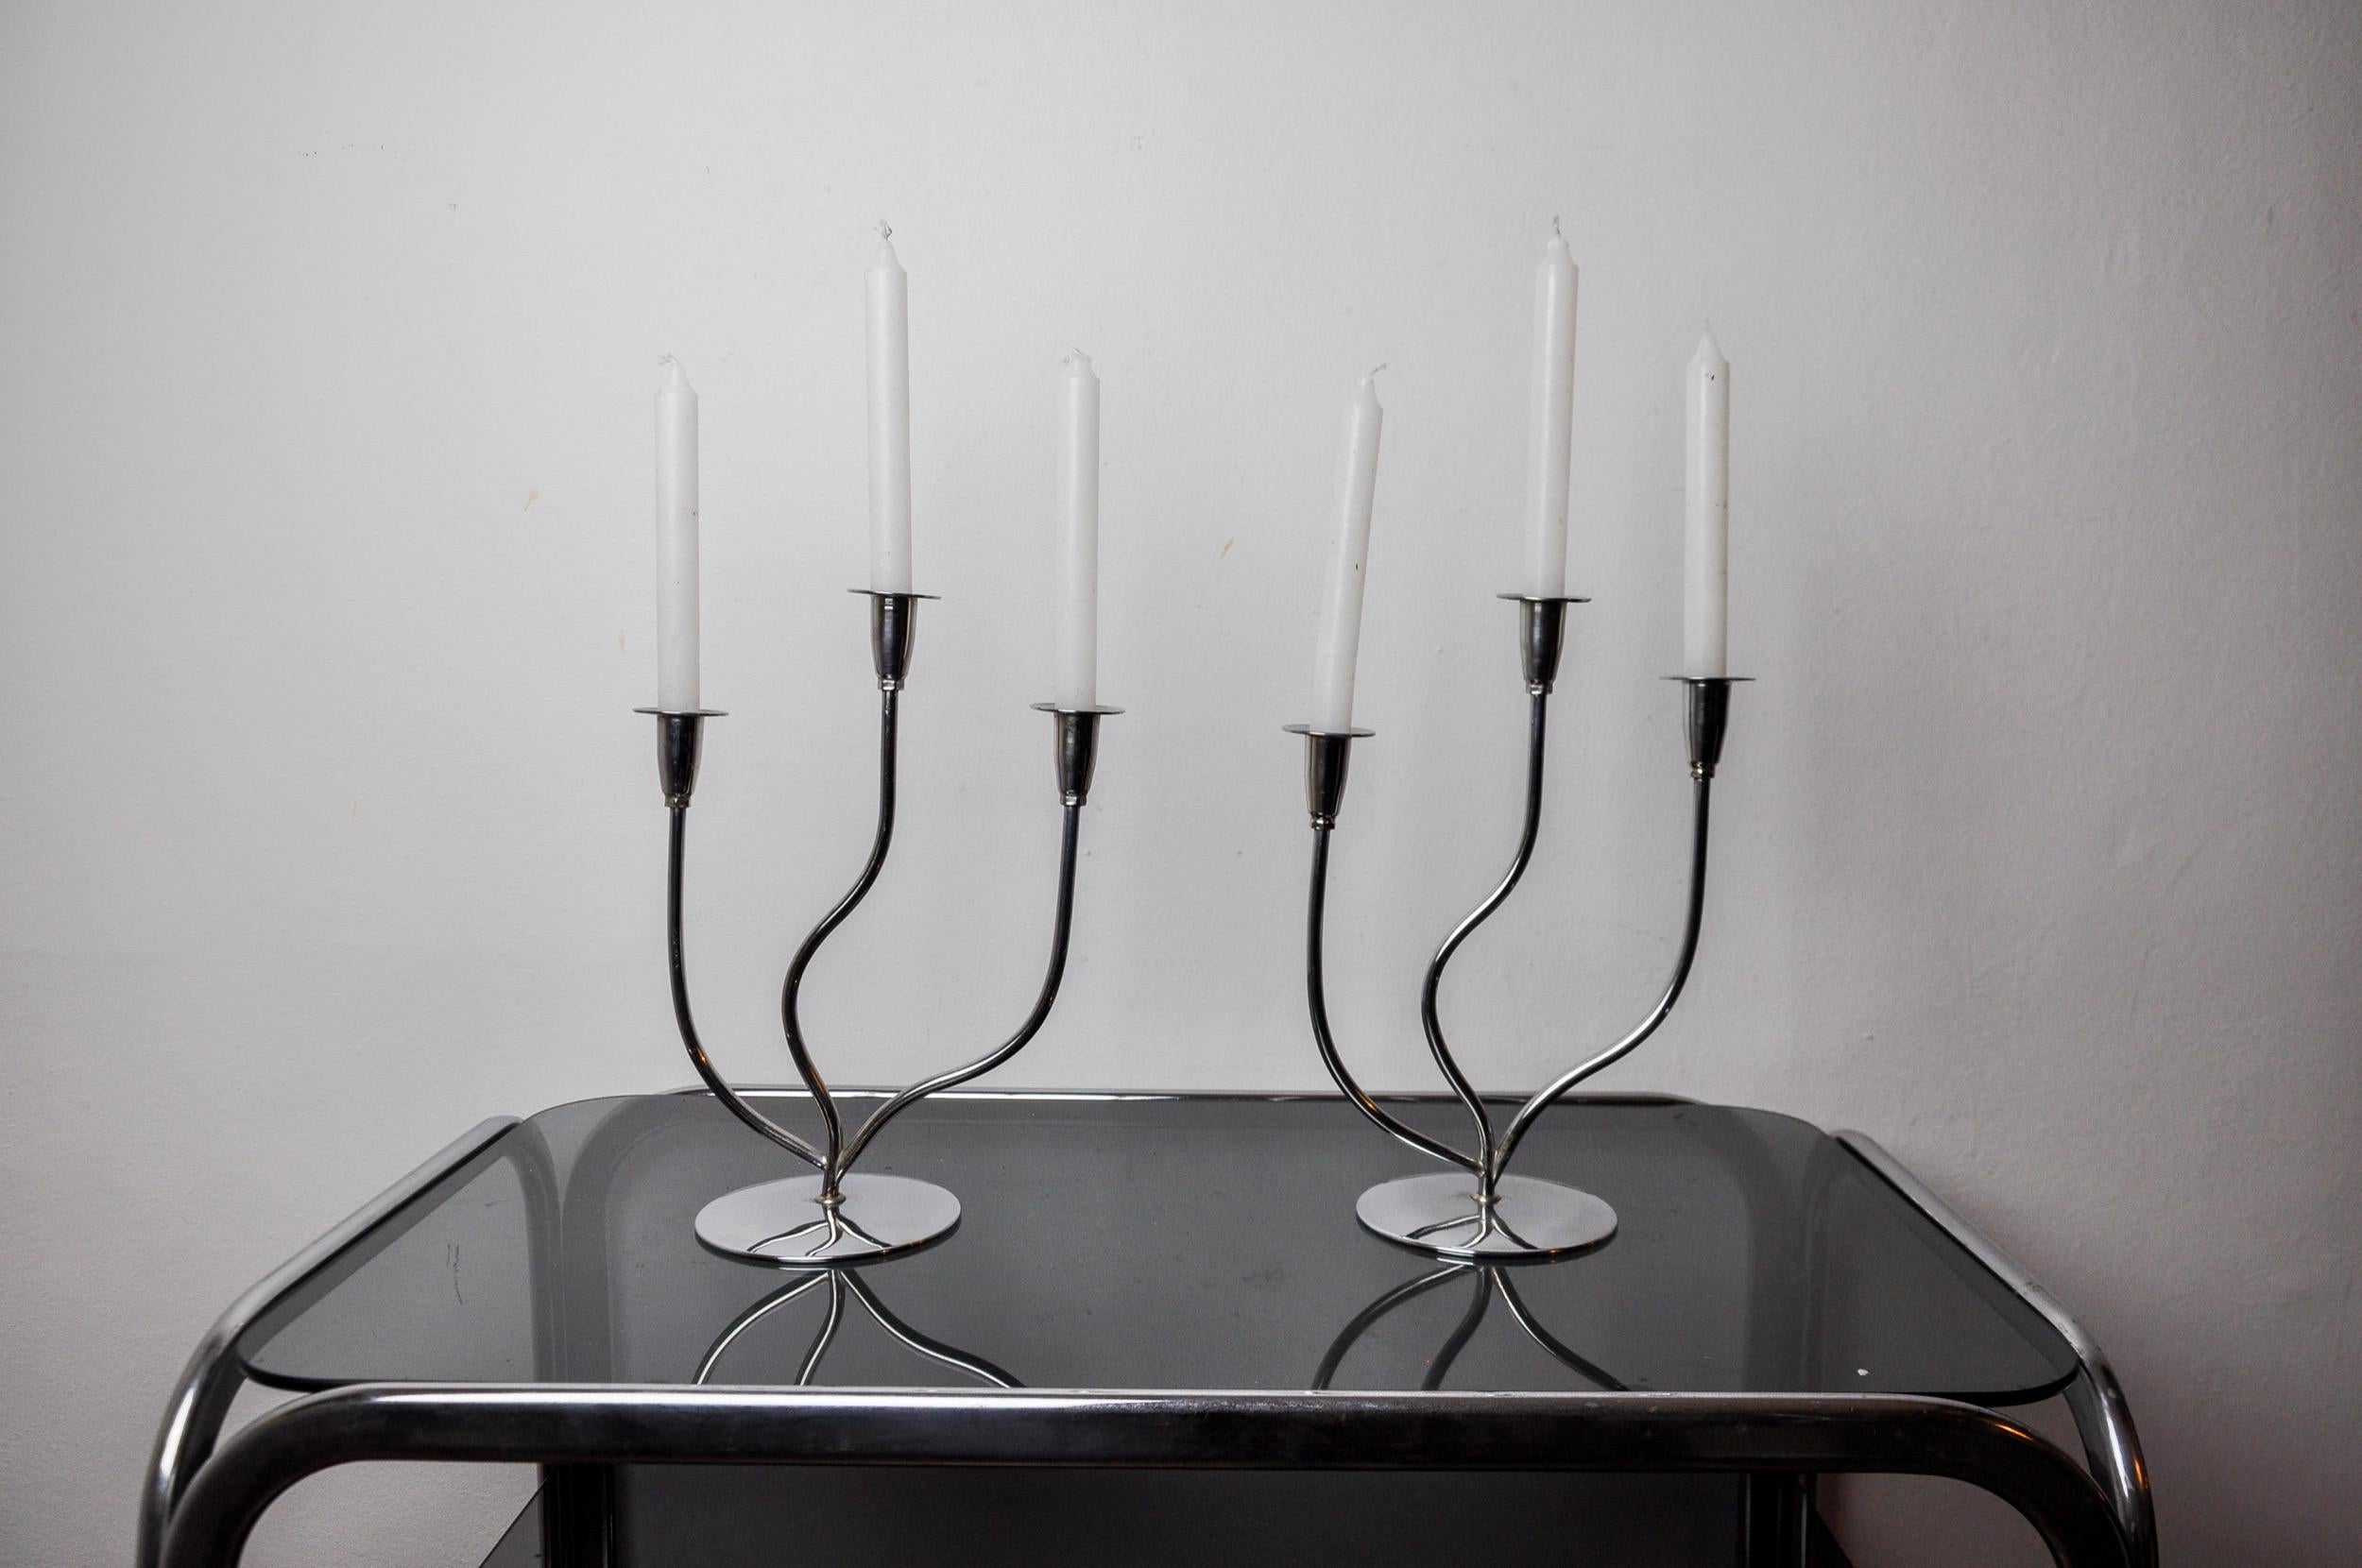 Sehr schönes Paar Kerzenhalter aus rostfreiem Stahl im Art-Deco-Stil, entworfen und hergestellt in Spanien in den 1970er Jahren. Struktur aus rostfreiem Stahl 18/8, die 3 Kerzen aufnehmen kann. Hervorragendes Designobjekt, das Ihr Interieur